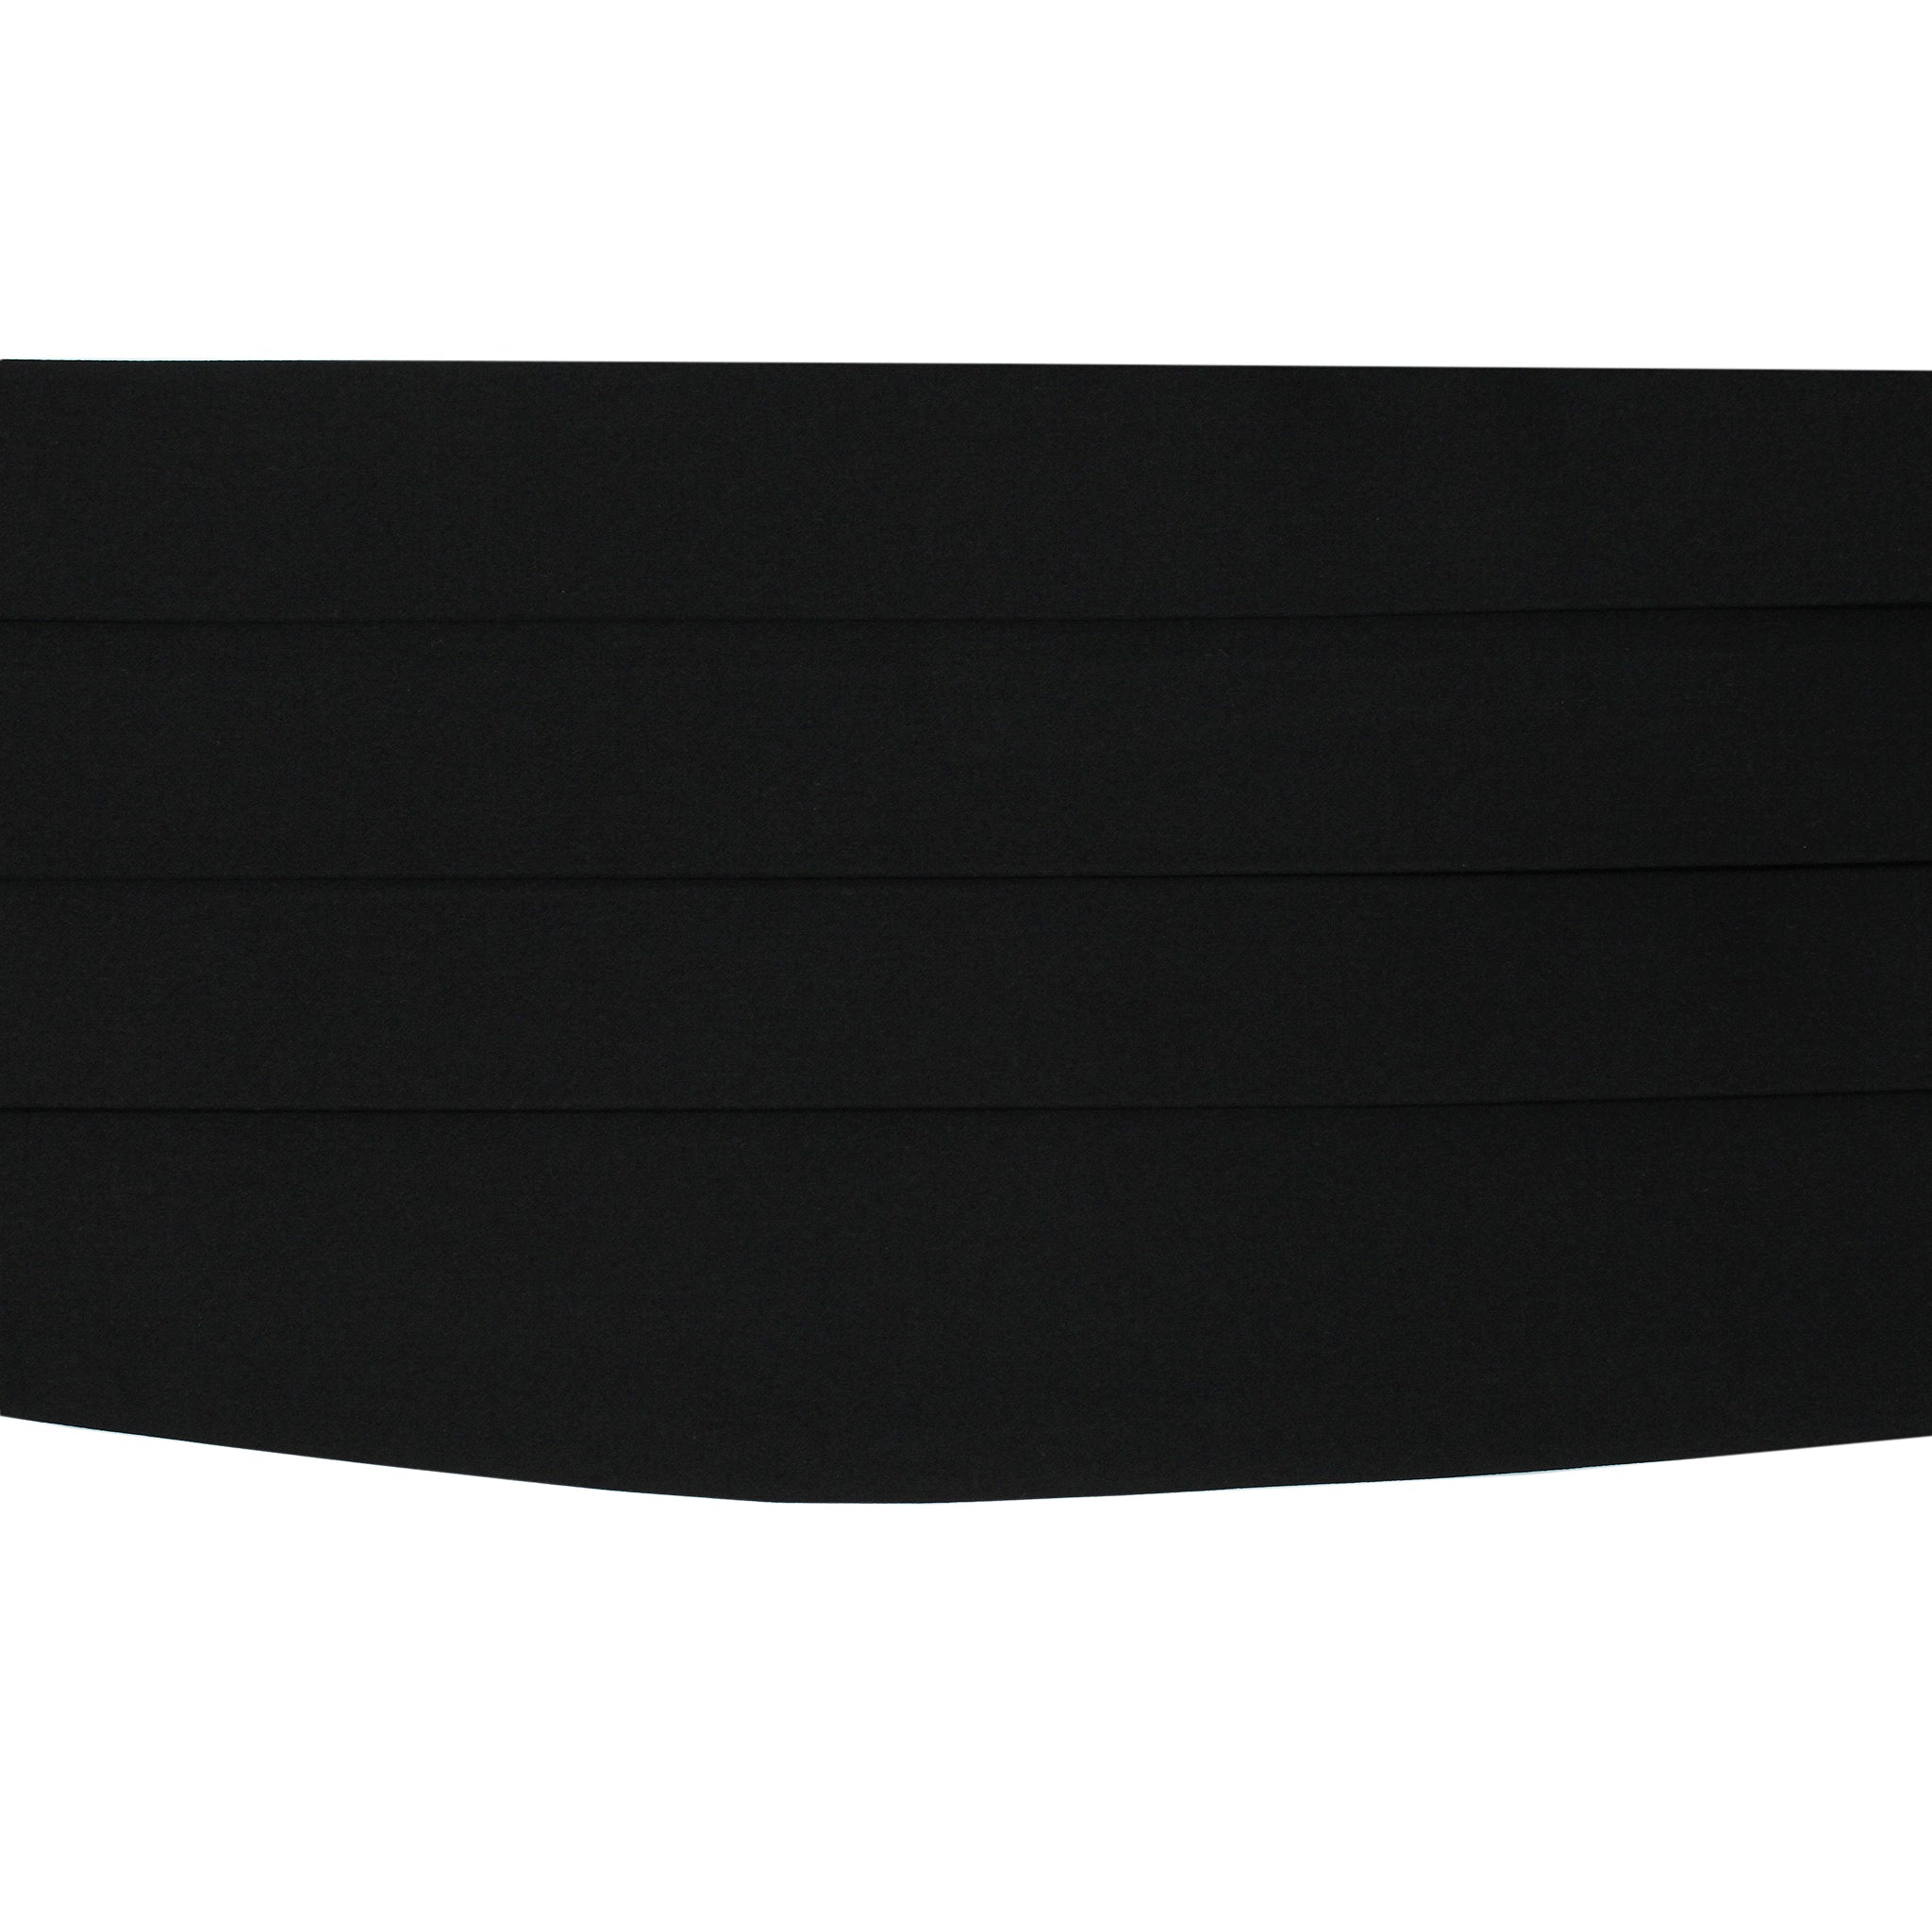 Tuxedo cummerbund handmade in black silk. Adjustable